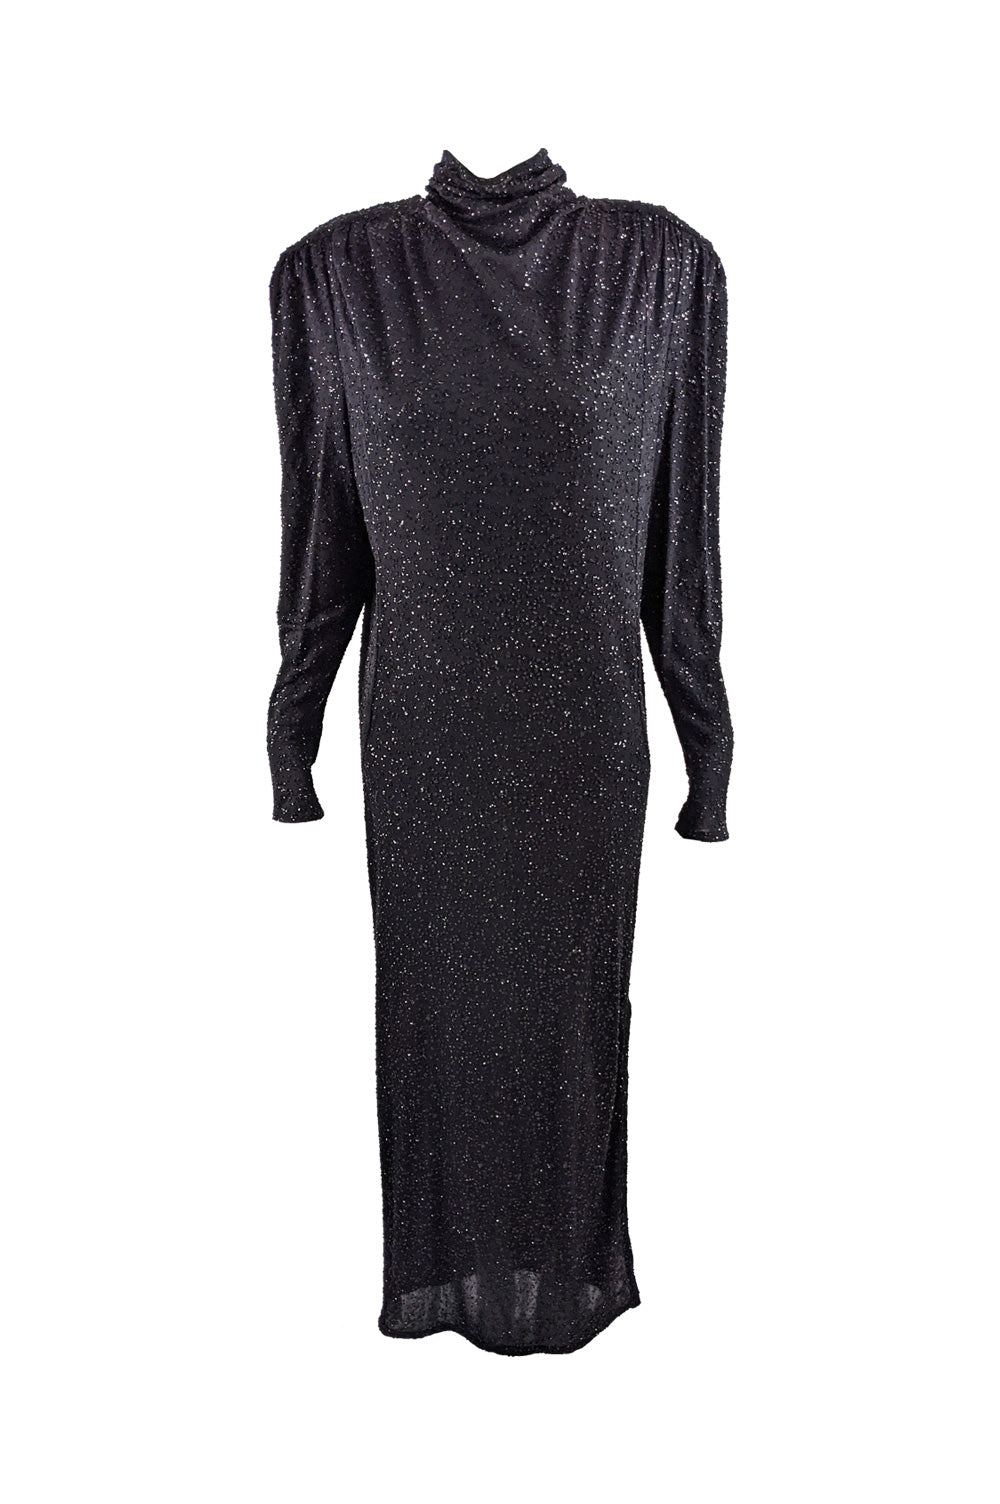 Vintage Shoulder Padded Black Glittery Backless Dress, 1980s